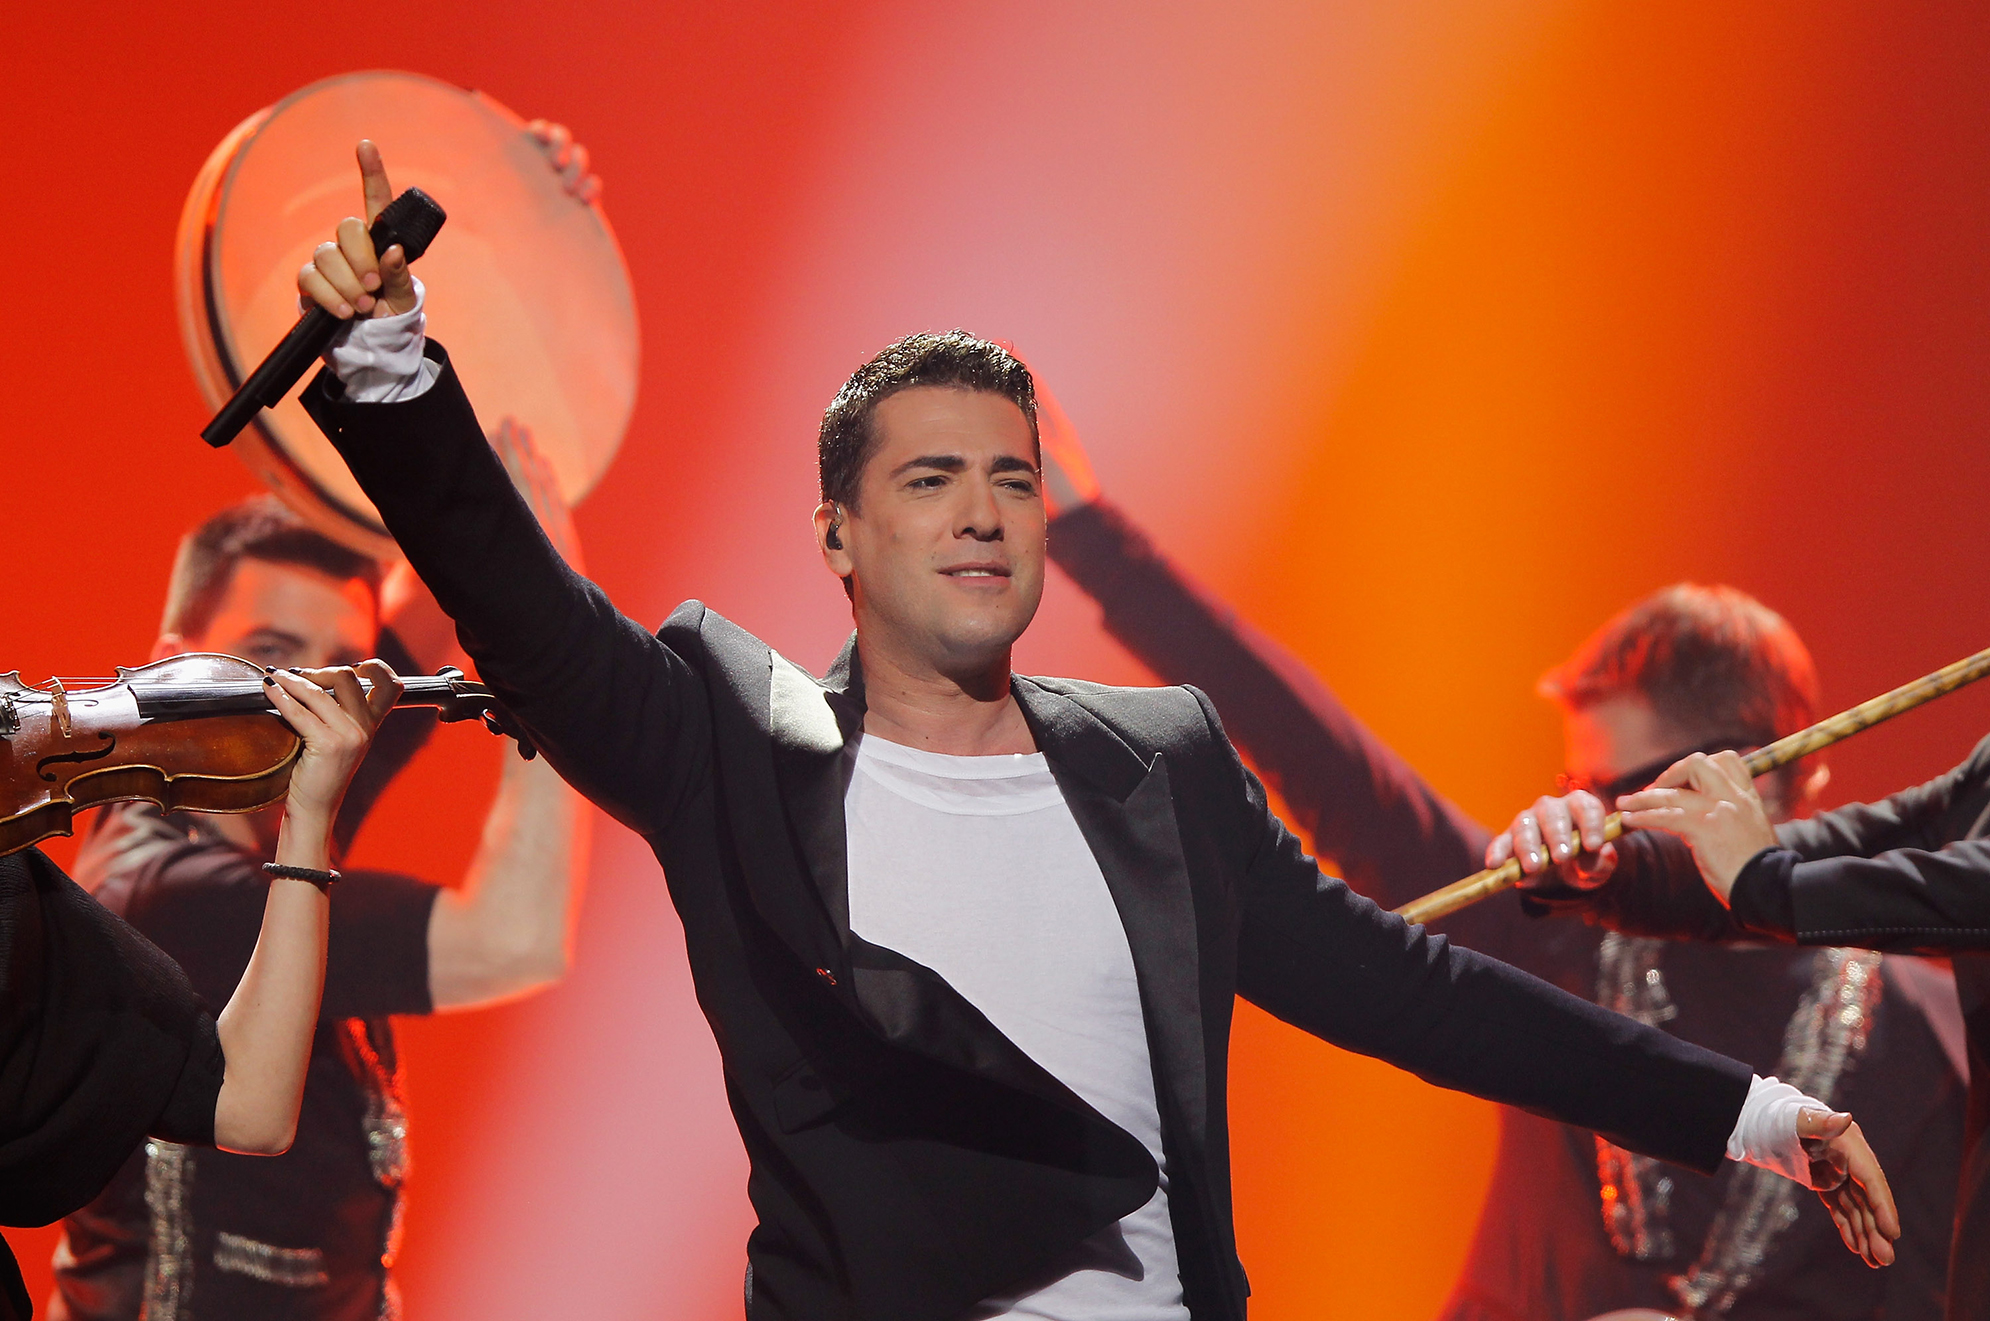 Montenegro: Željko Joksimović to compose the entry for Eurovision